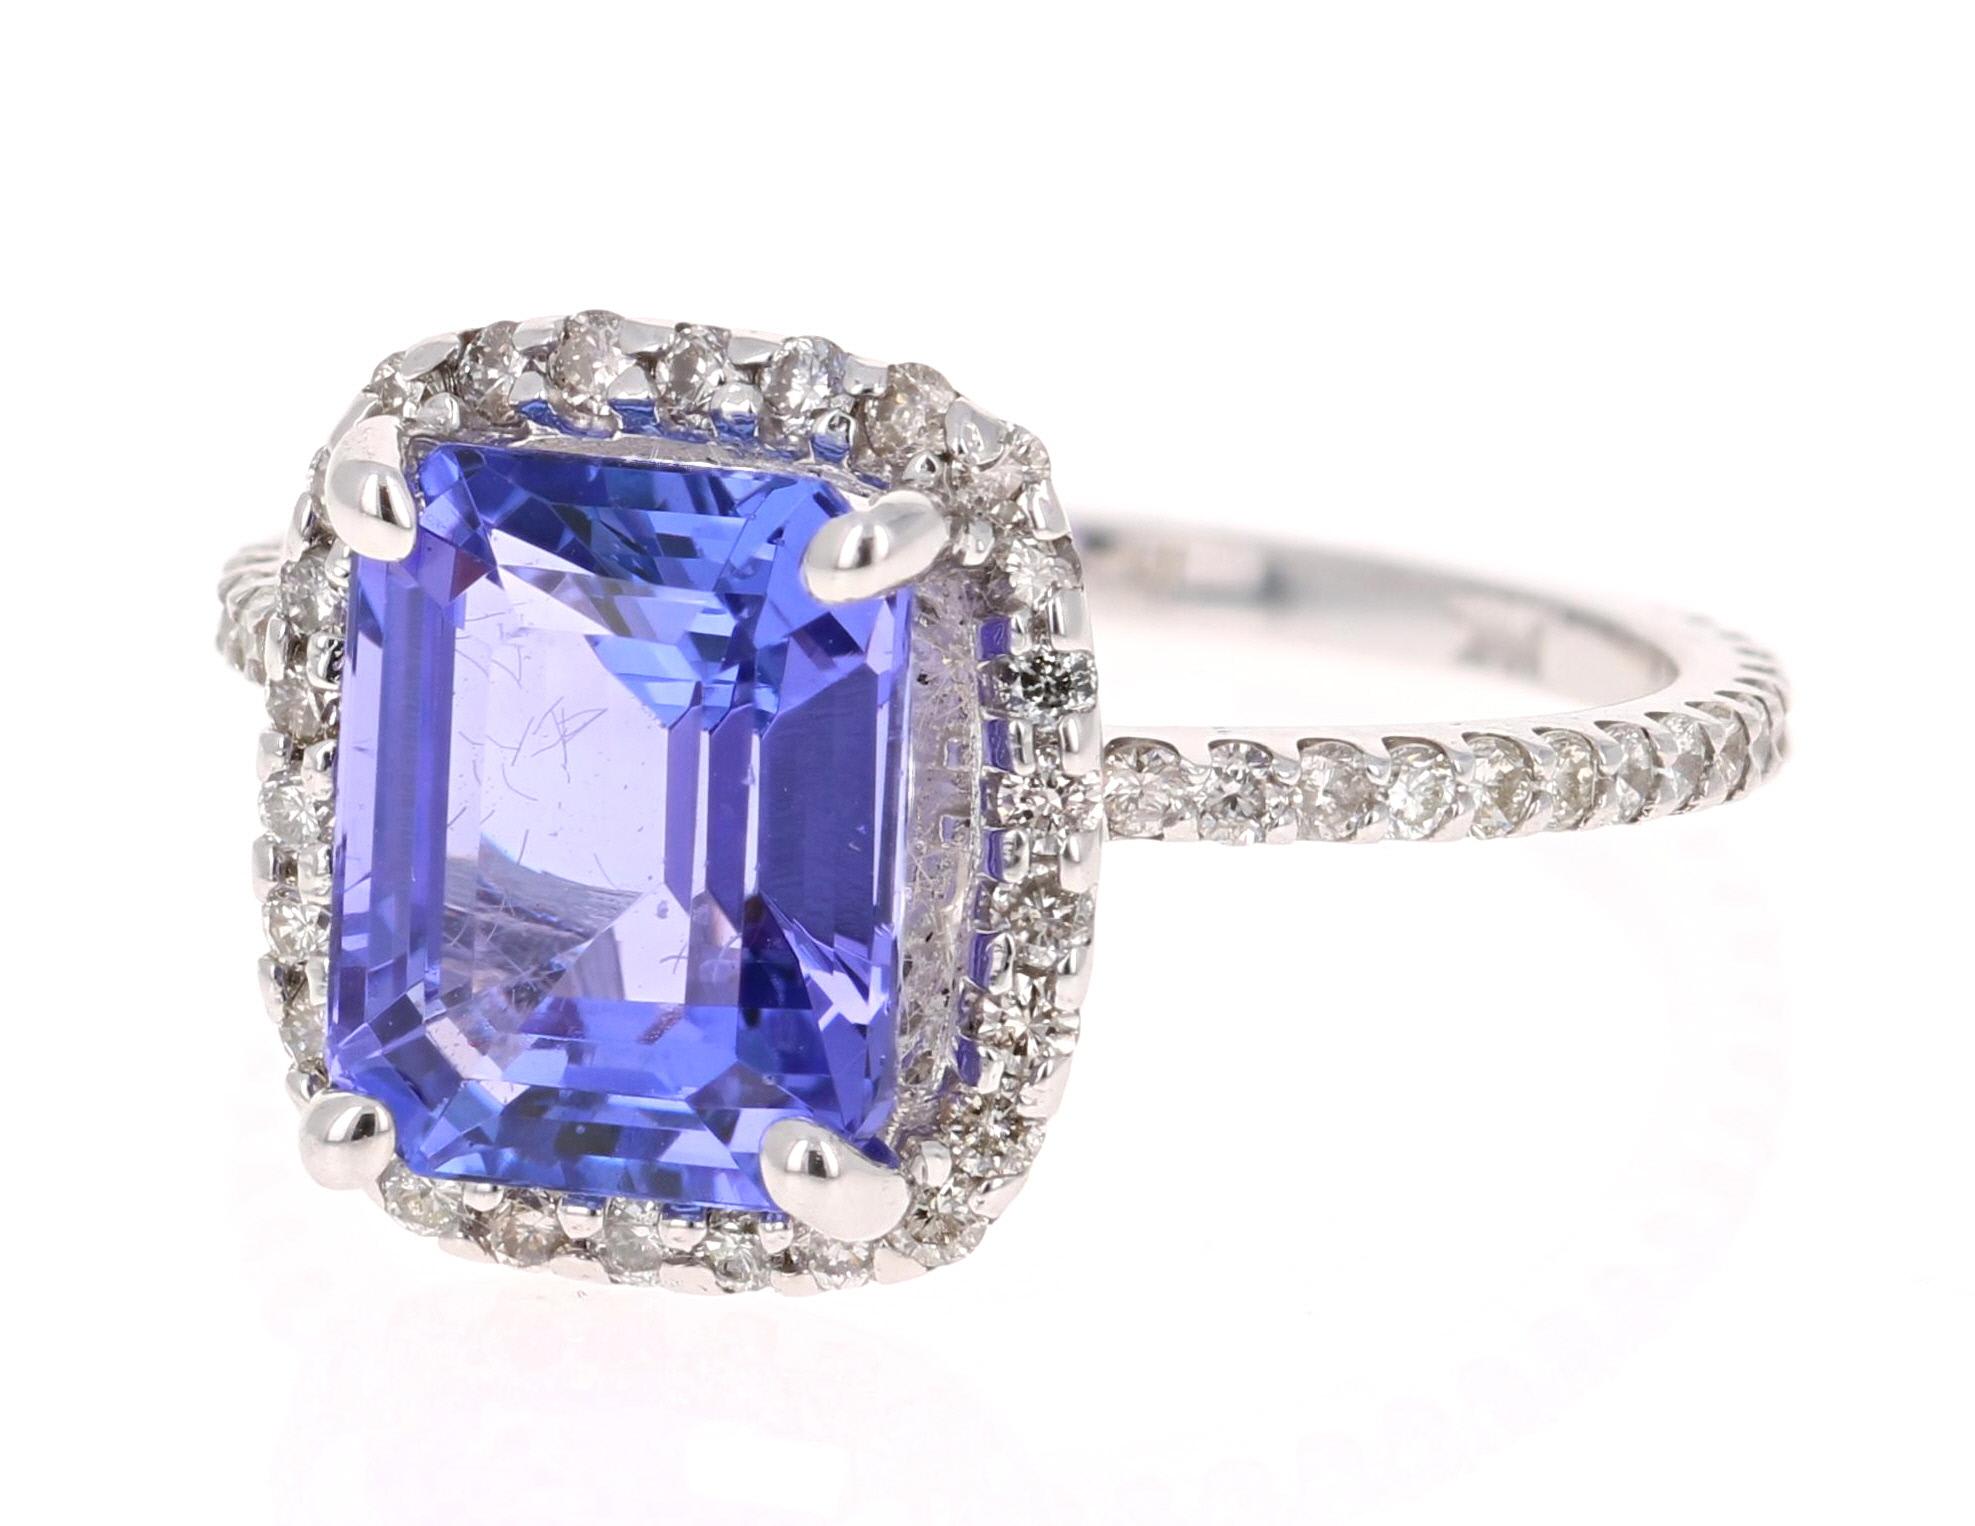 Ein wunderschöner Ring mit 4,30 Karat Tansanit und Diamant, der sich leicht in einen einzigartigen Verlobungsring für einen besonderen Menschen verwandeln lässt!

Der Tansanit ist ein Stein im Smaragdschliff und wiegt 3,62 Karat.  Der Ring ist